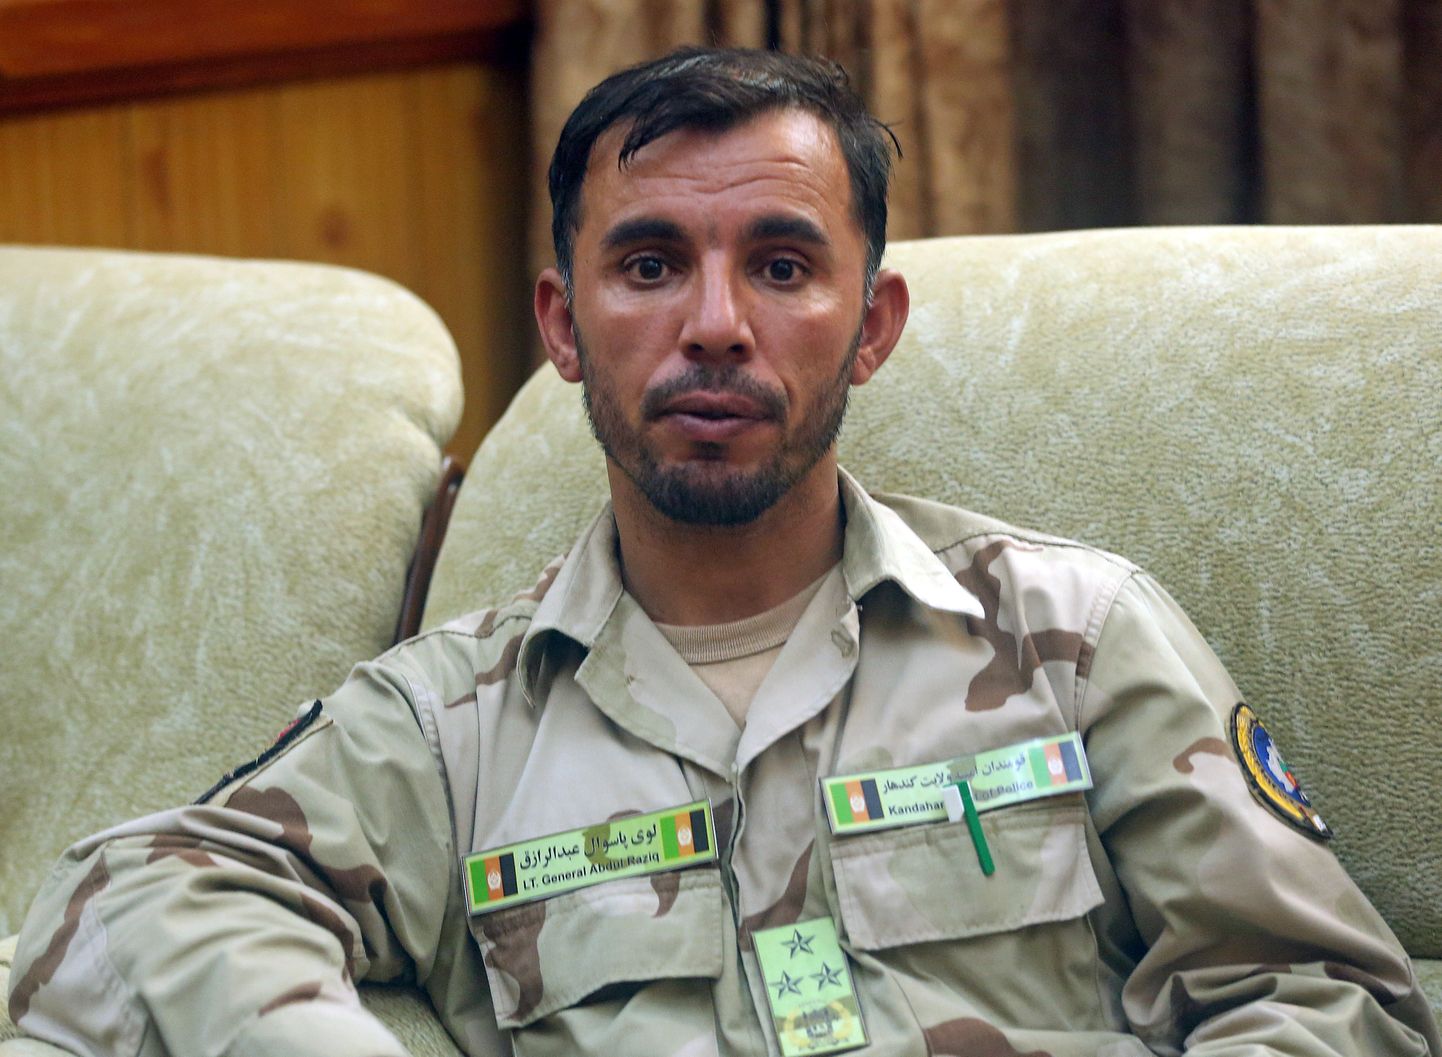 Kandahari provintsi politseiülem kindral Abdul Raziq, kes sai surma täna toimunud rünnakus.